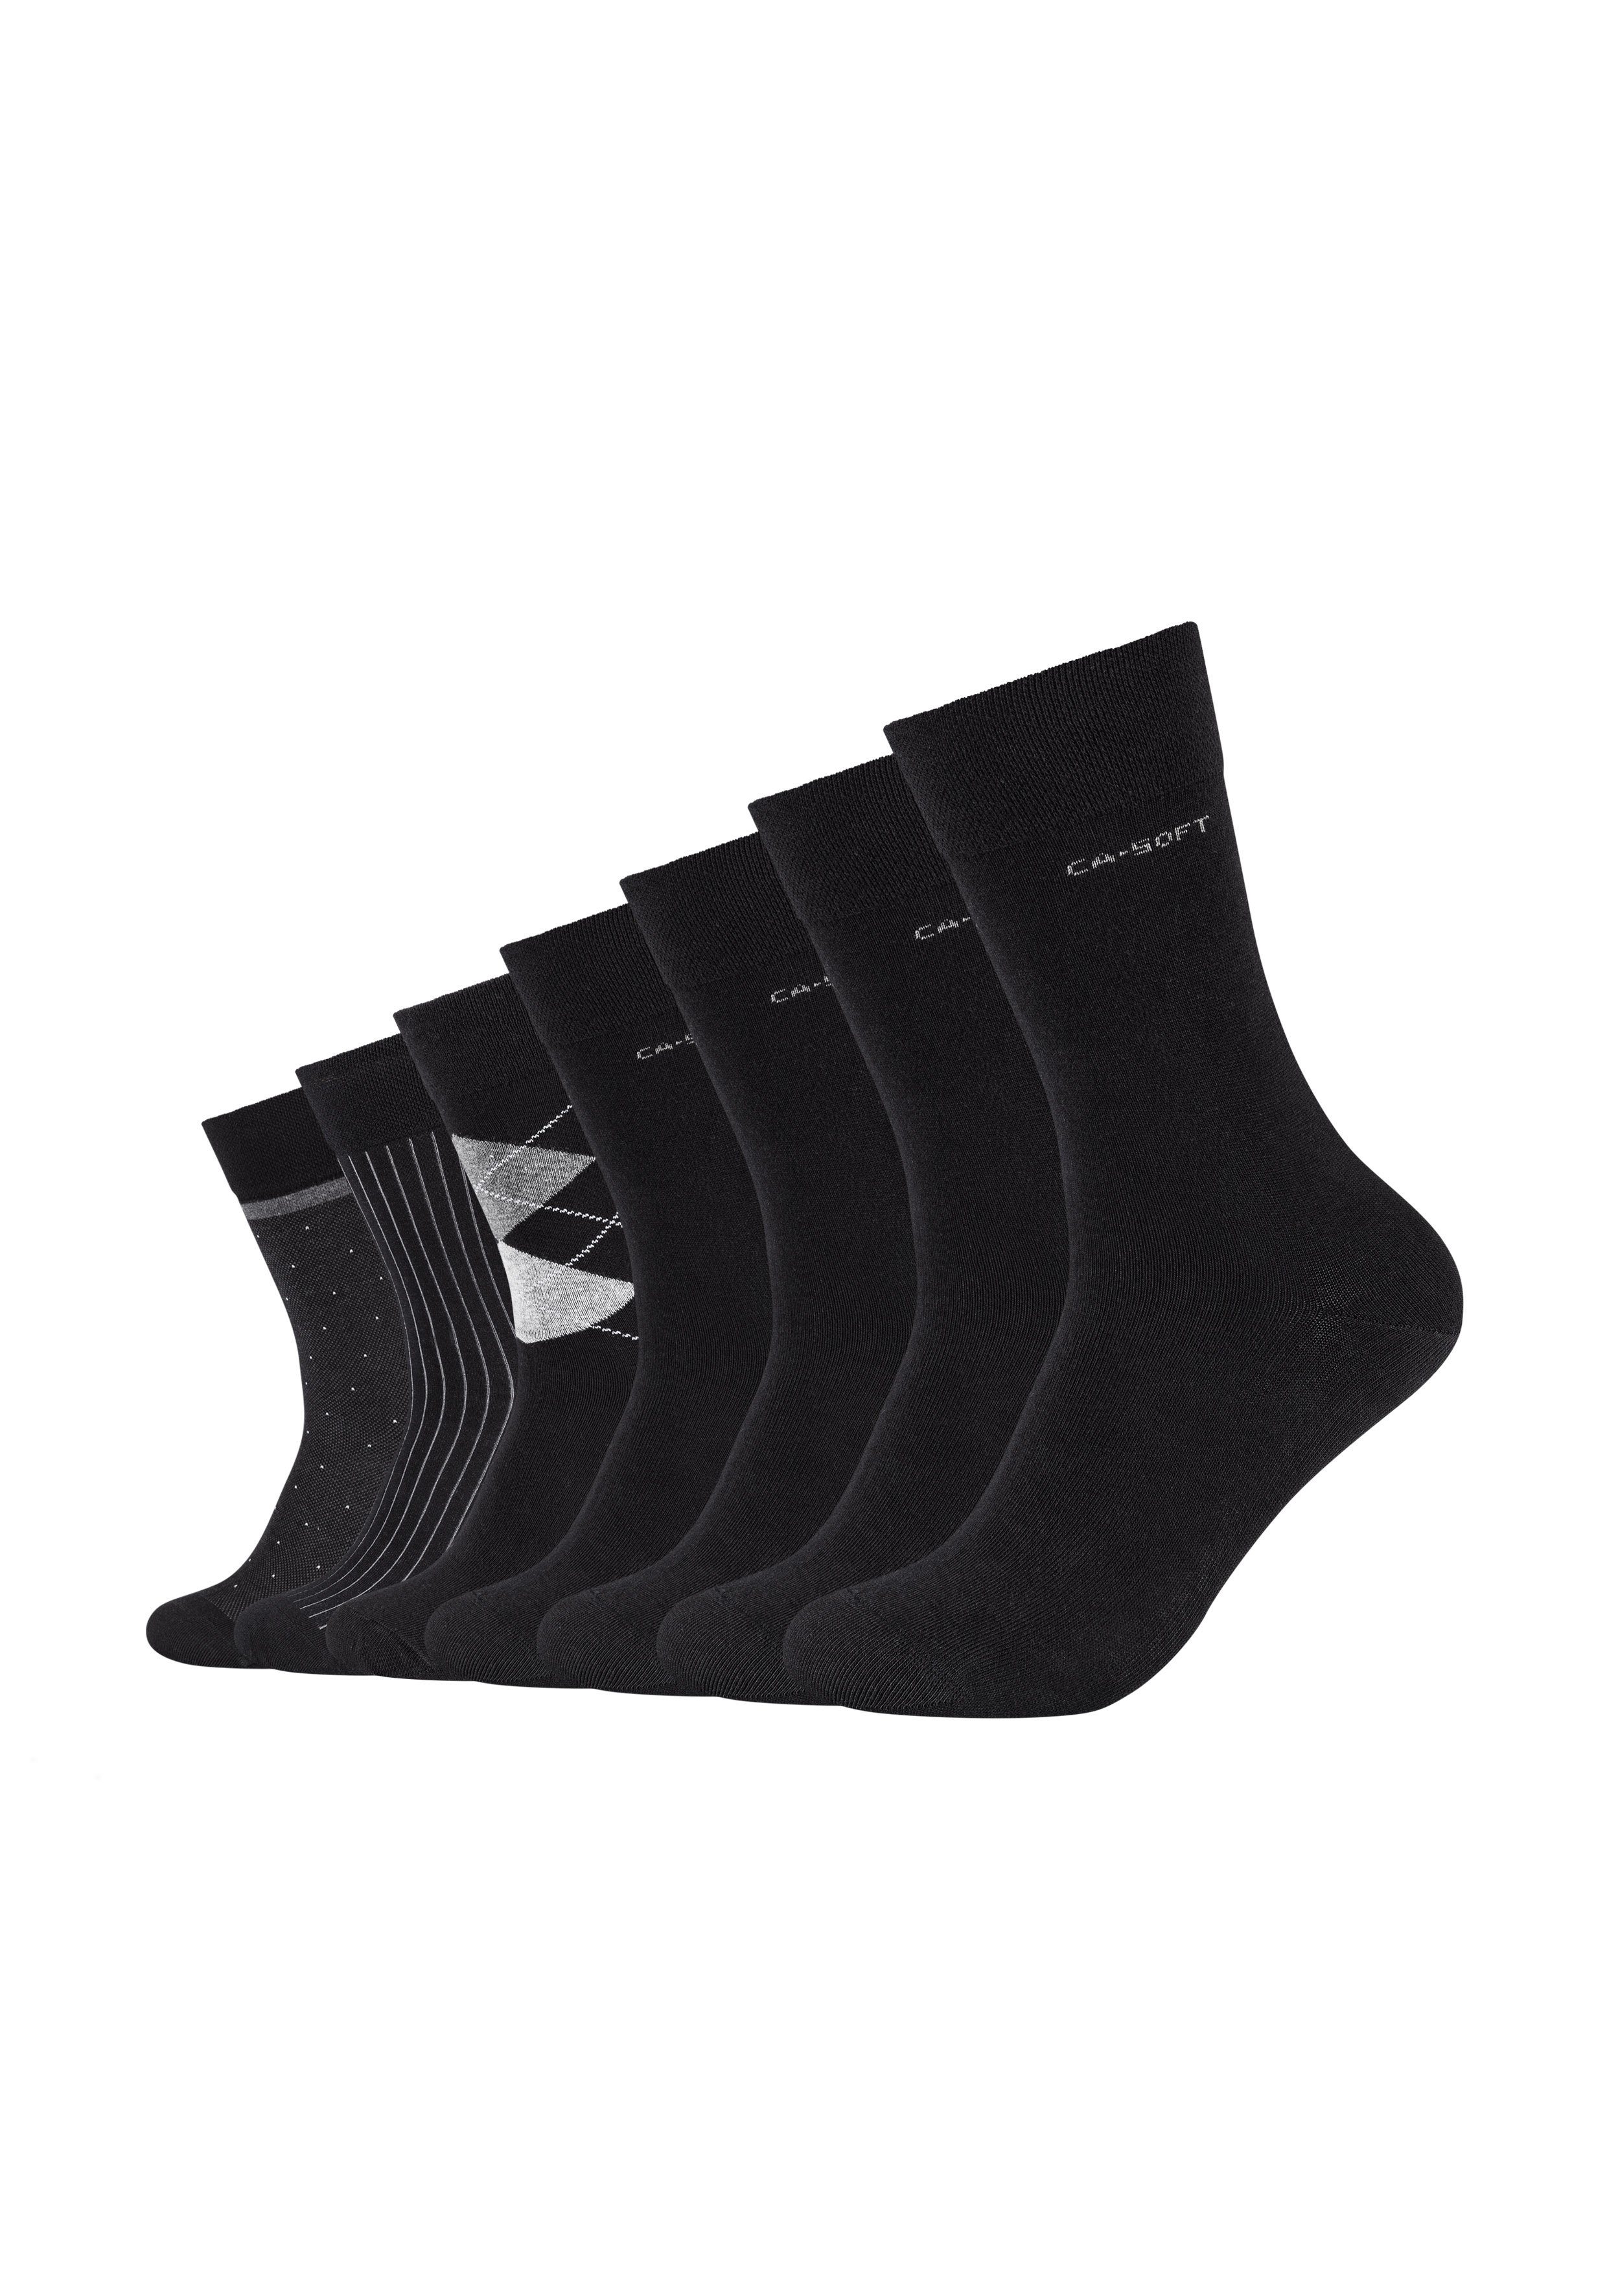 schwarz Socken ca-soft (7-Paar) mit Komfortbund weichem Camano